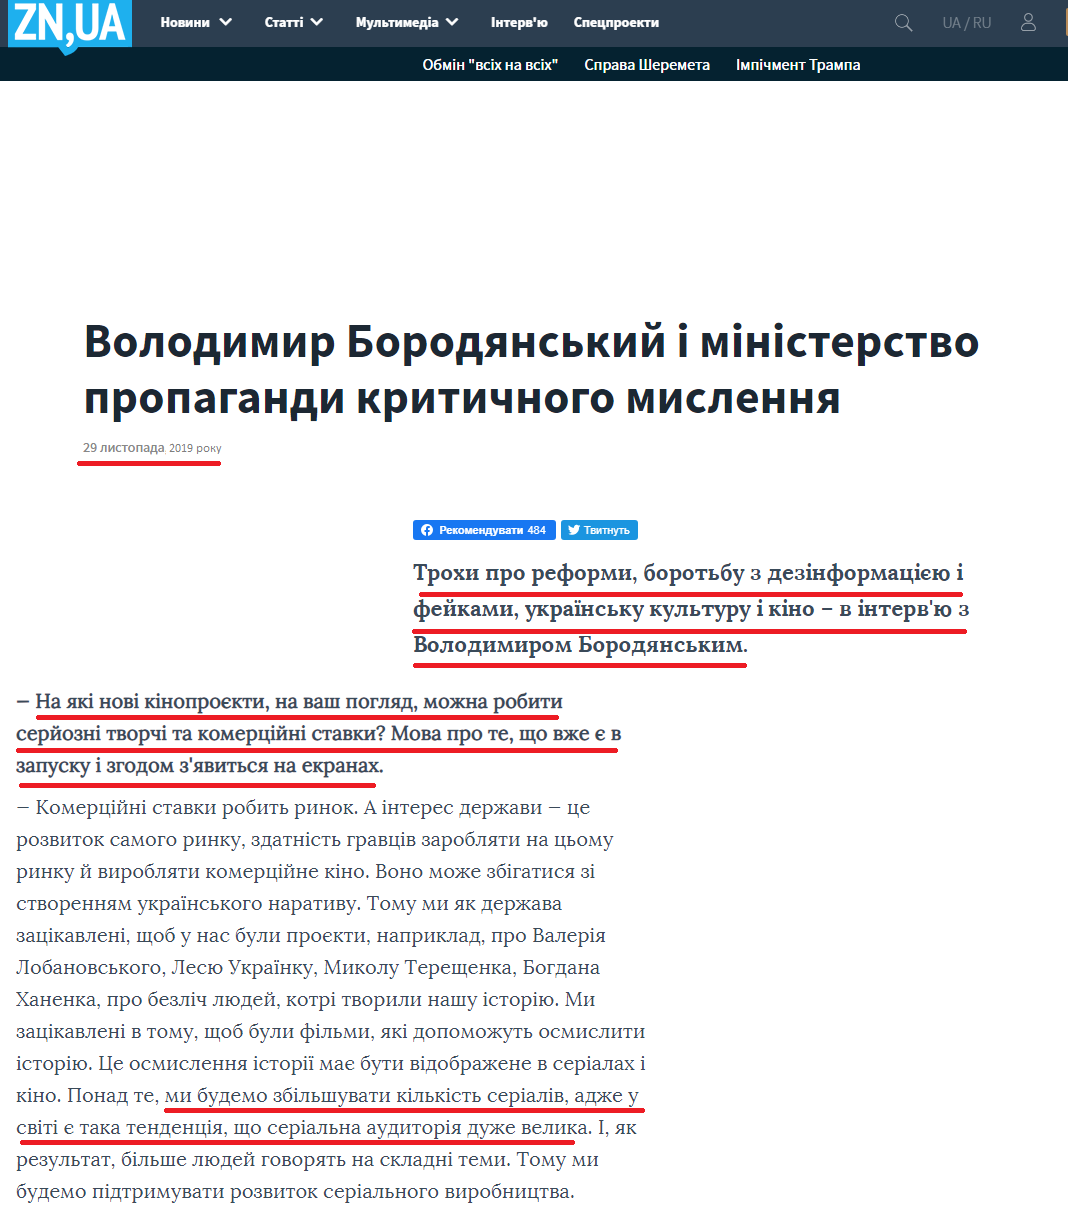 https://dt.ua/interview/volodimir-borodyanskiy-i-ministerstvo-propagandi-kritichnogo-mislennya-331392_.html